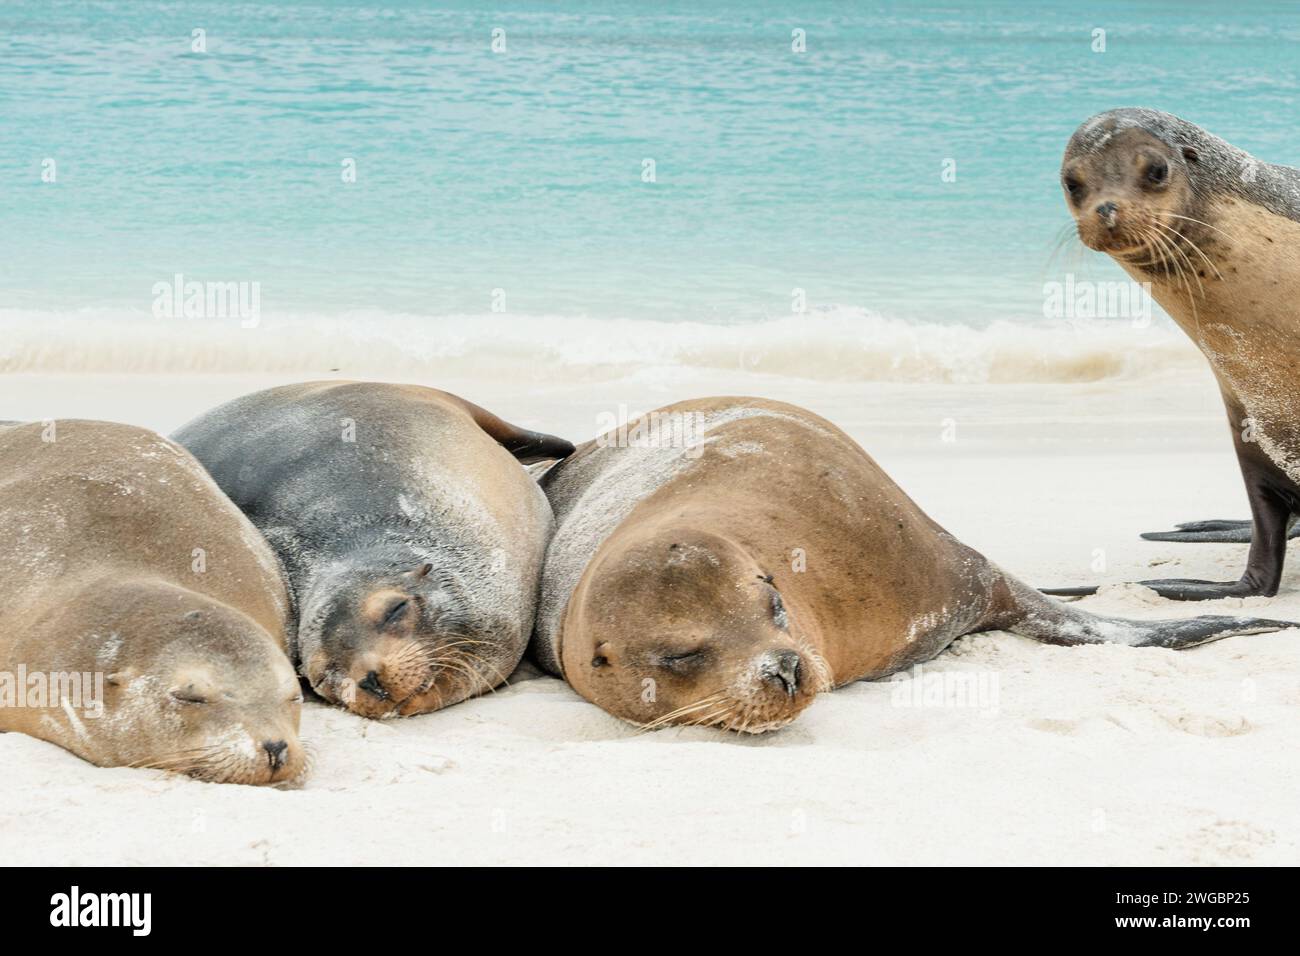 ¡Despierta! curioso y divertido león marino choca la foto de 3 leones marinos durmientes en el océano pacífico de galápagos Foto de stock